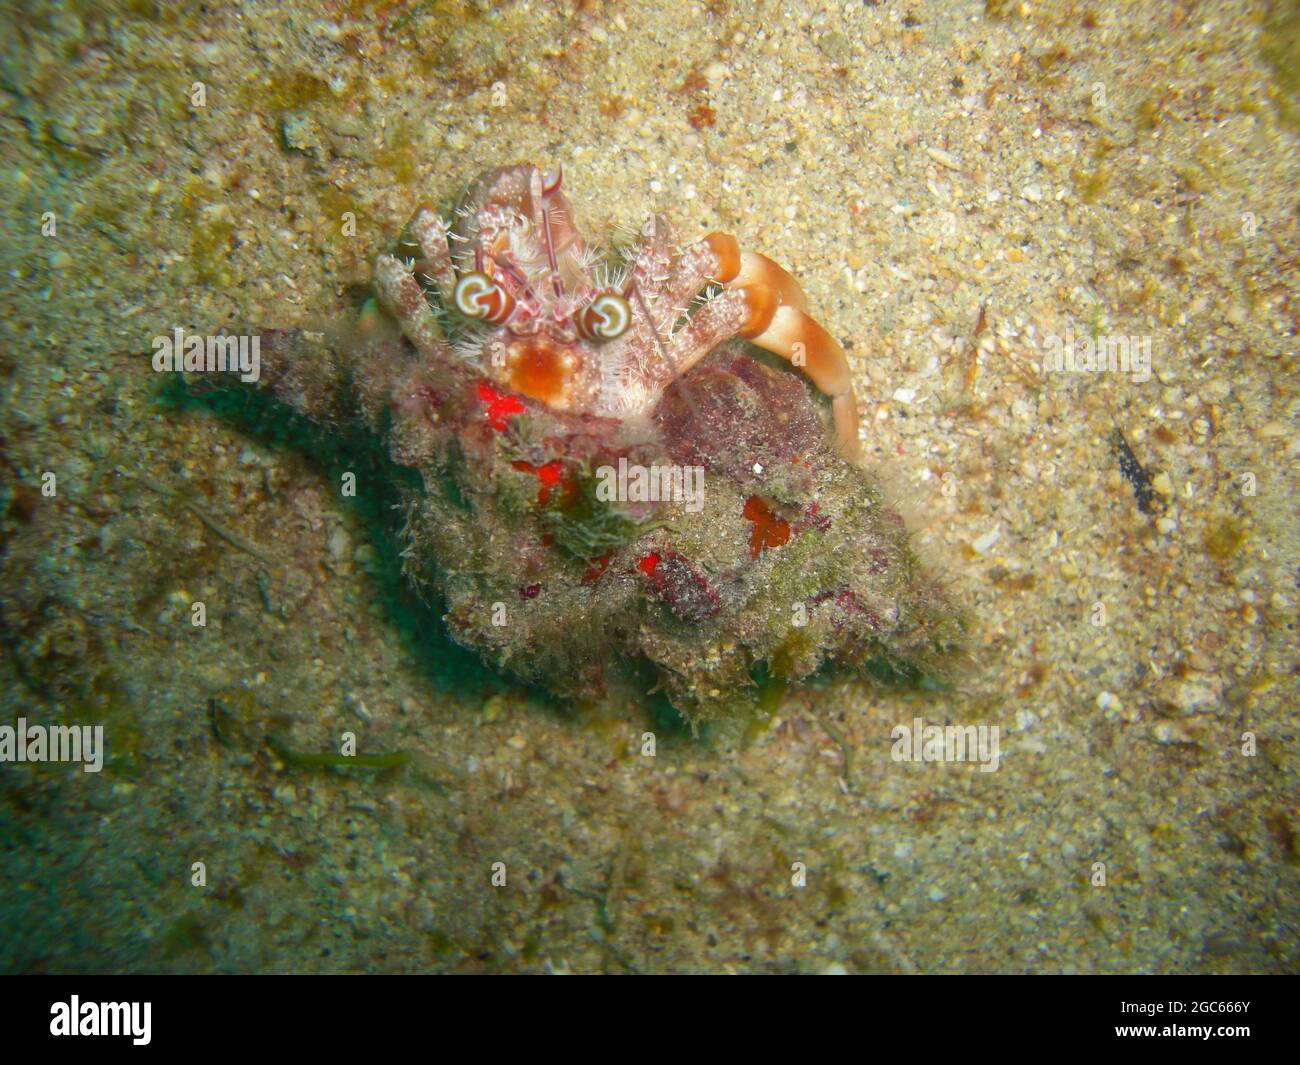 Cangrejo ermitaño (Paguroidea) en tierra en el mar filipino 28.11.2012 Foto de stock